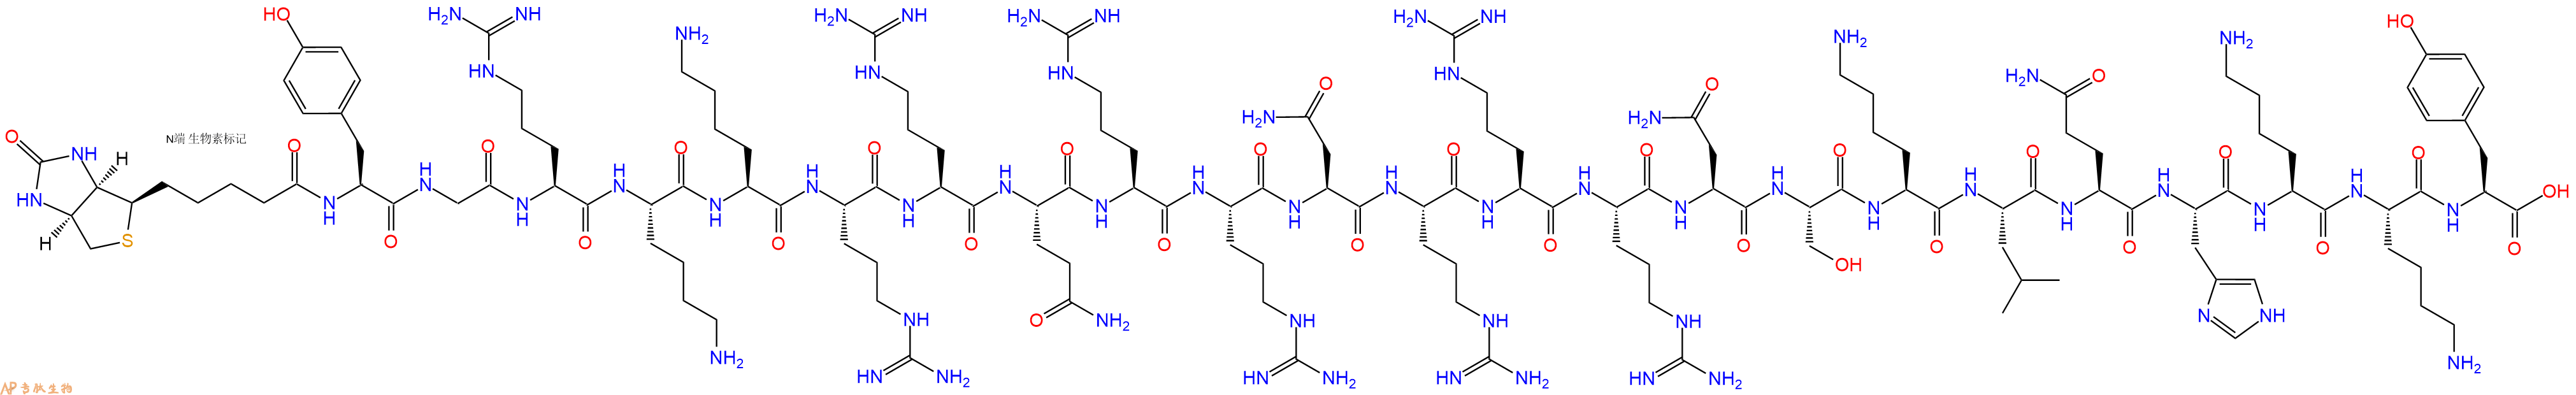 专肽生物产品Biotin-Tyr-Gly-Arg-Lys-Lys-Arg-Arg-Gln-Arg-Arg-Asn